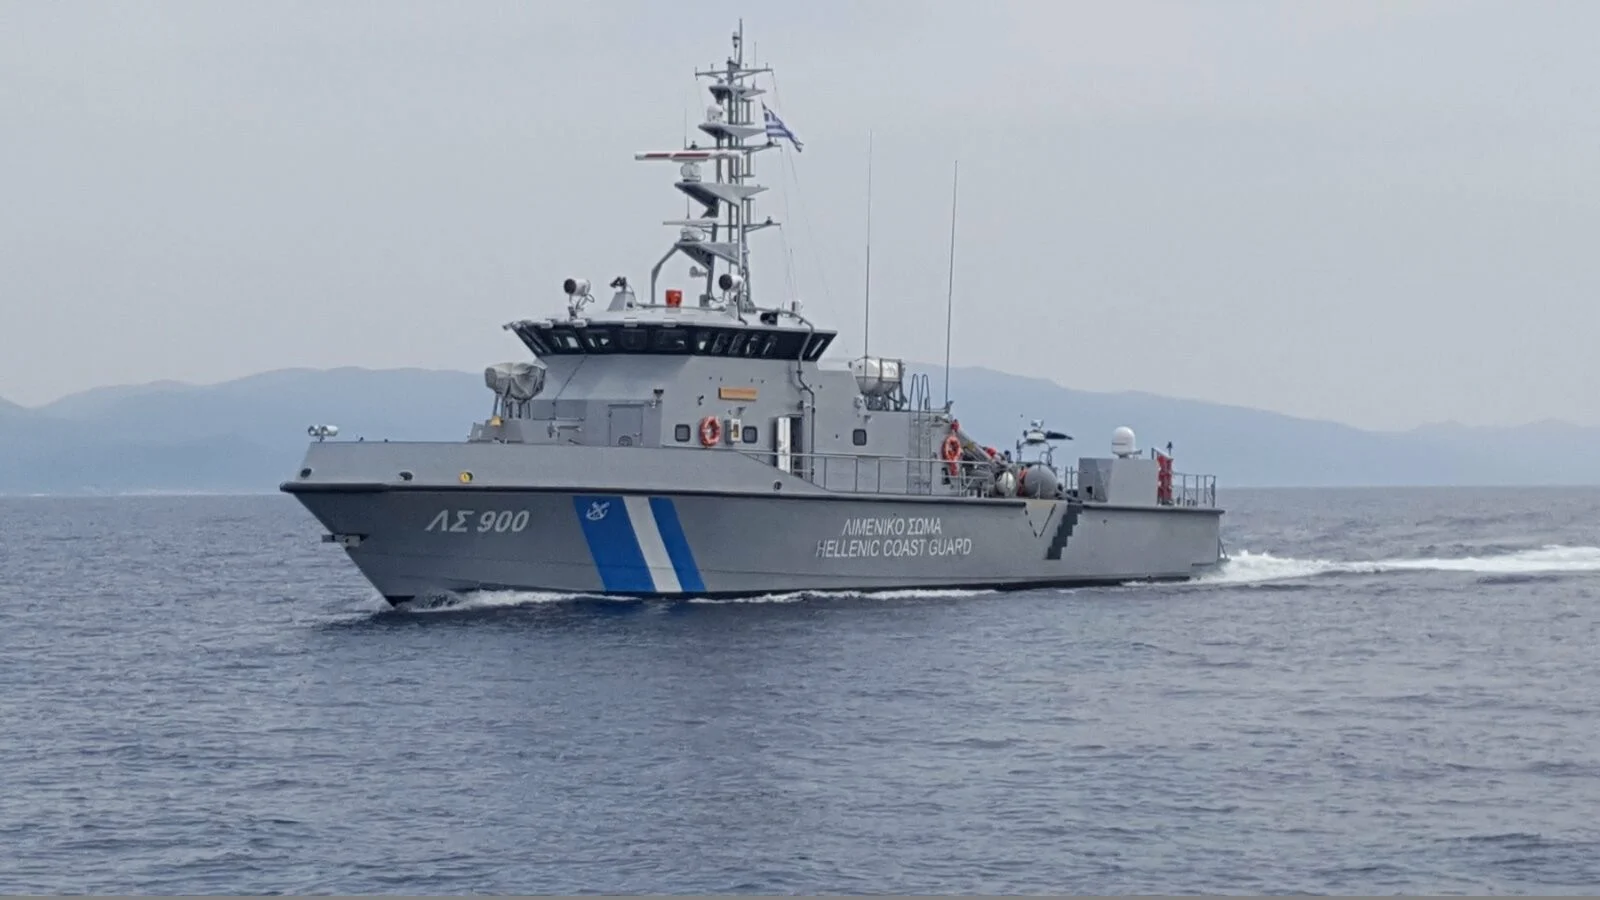 Σκάφος του ΛΣ παρέλαβε από σκάφος της FRONTEX  47 αλλοδαπούς μουσουλμάνους  και τους μετέφερε στη Σάμο